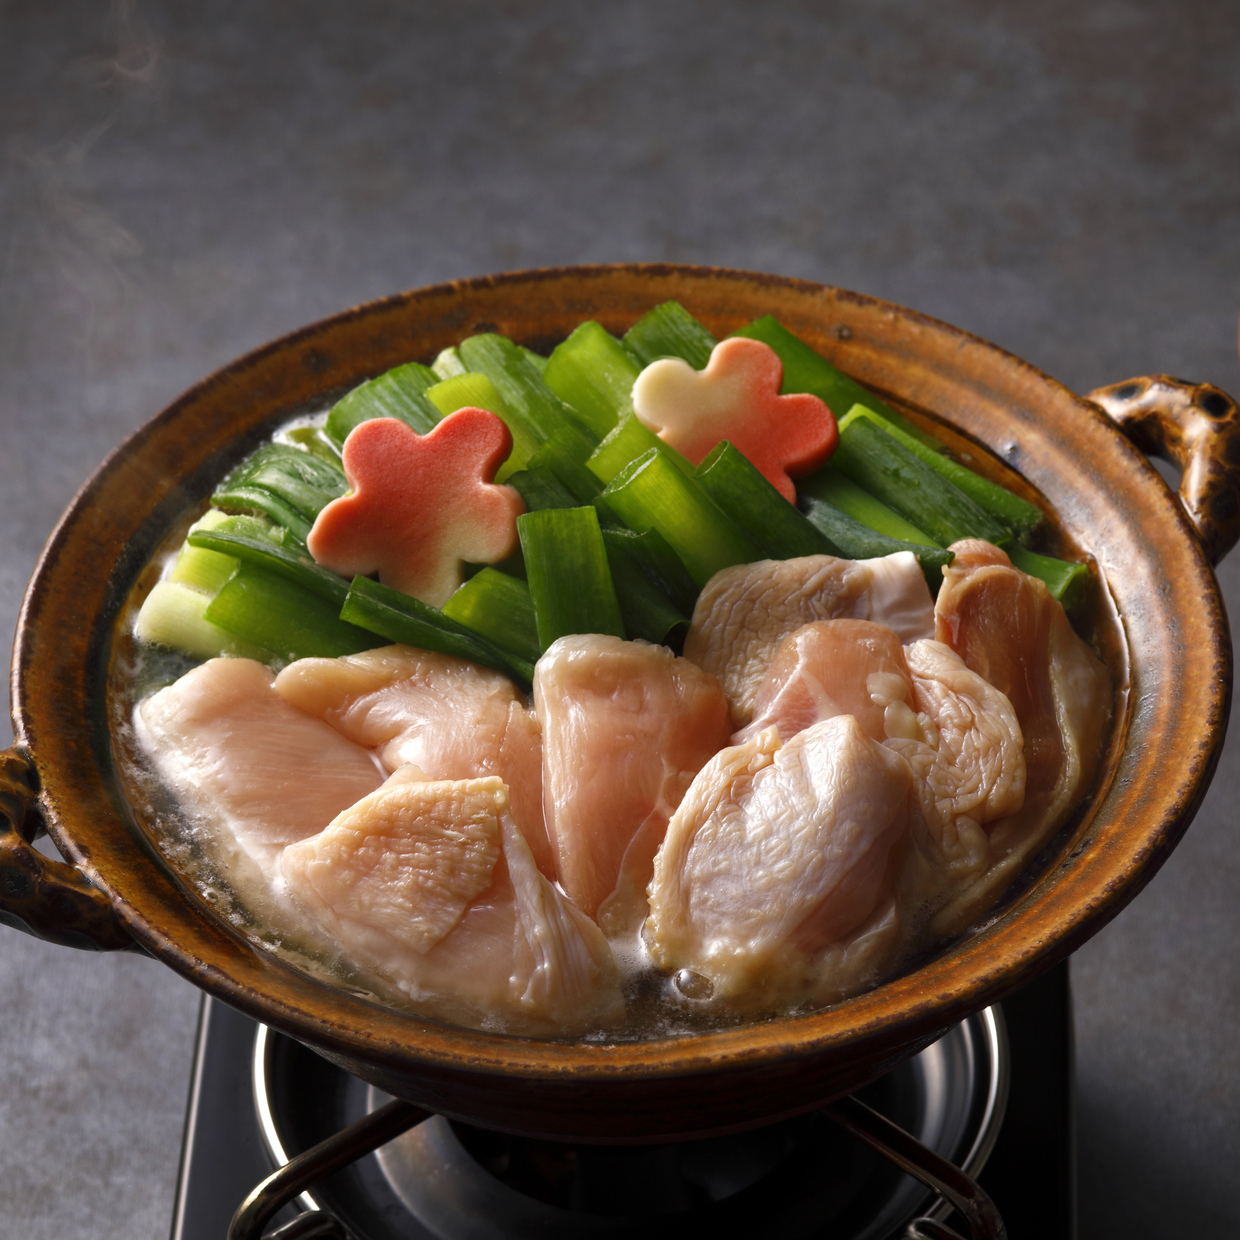  『こと京都』の九条ねぎ鶏の塩鍋